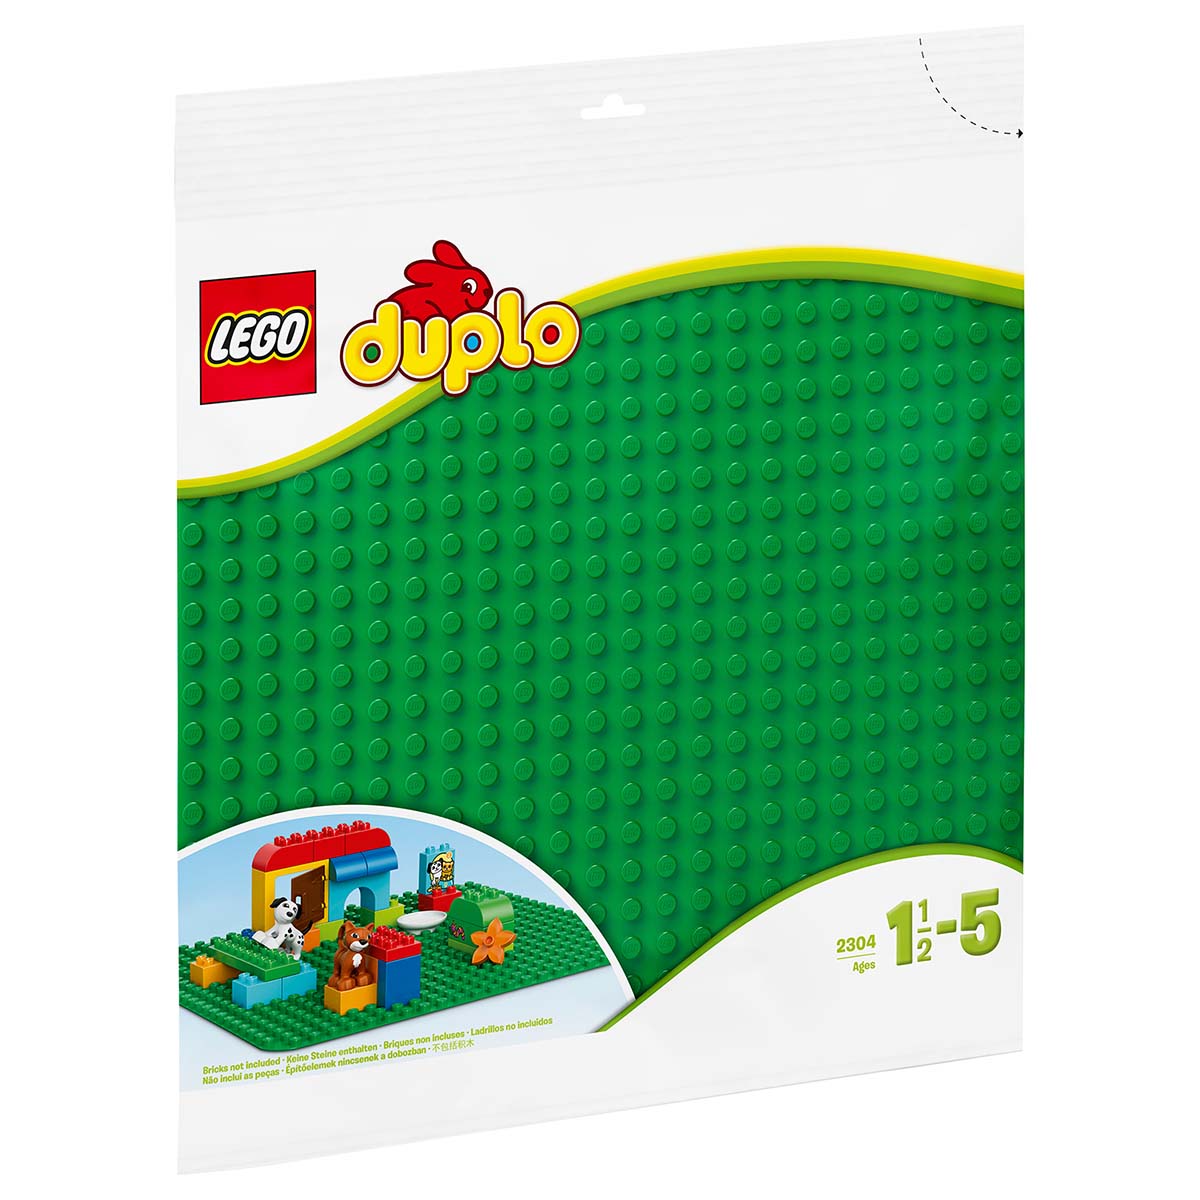 LEGO DUPLO 2304 BOUWPLAAT GROEN 24X24 NOPPEN